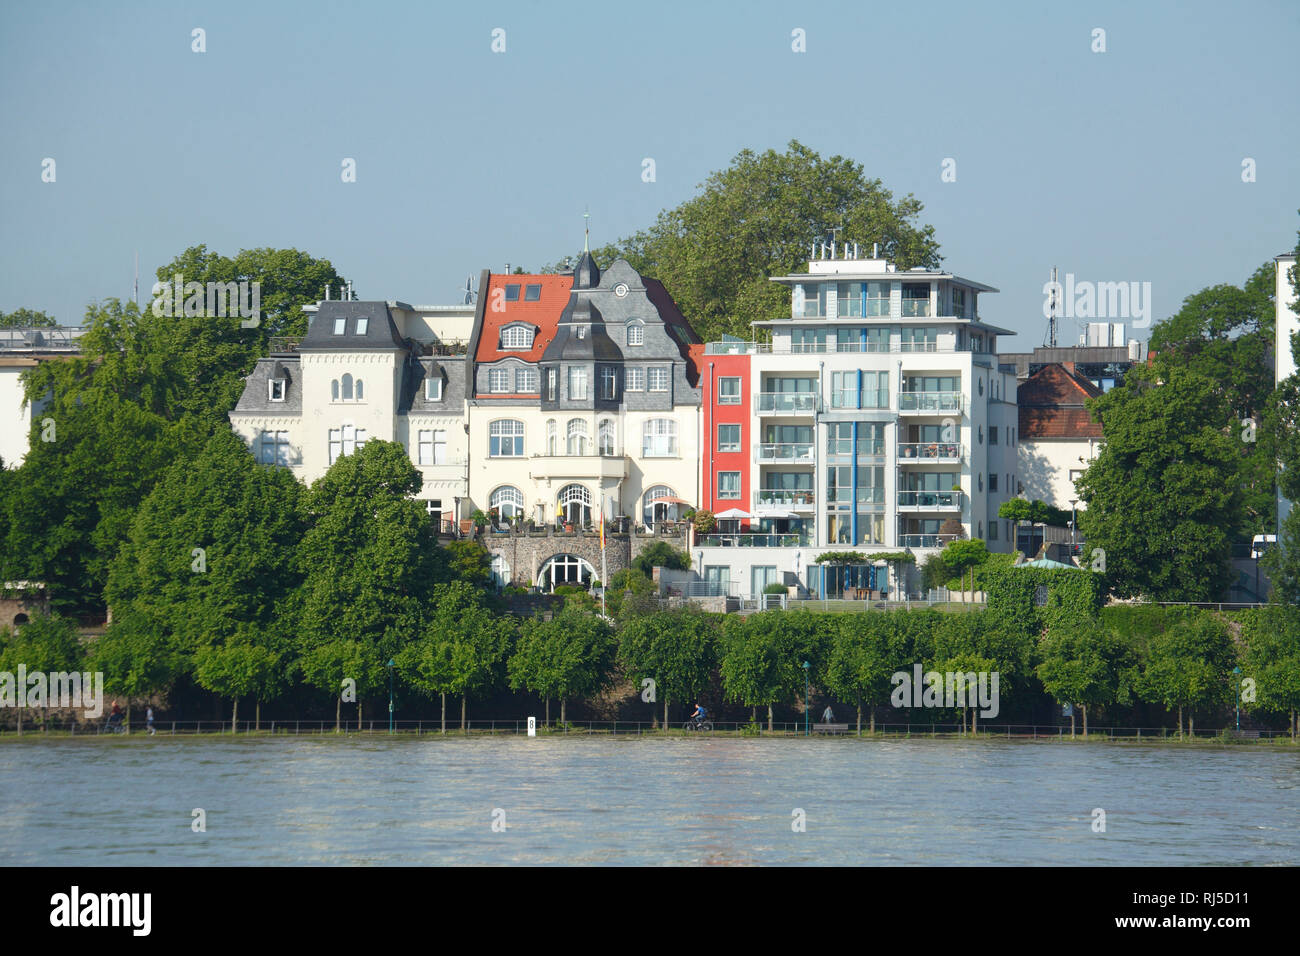 Alte und Moderne Häuser, Rheinufer, Rhein, Bonn, Nordrhein-Westfalen, Deutschland, Europa Banque D'Images